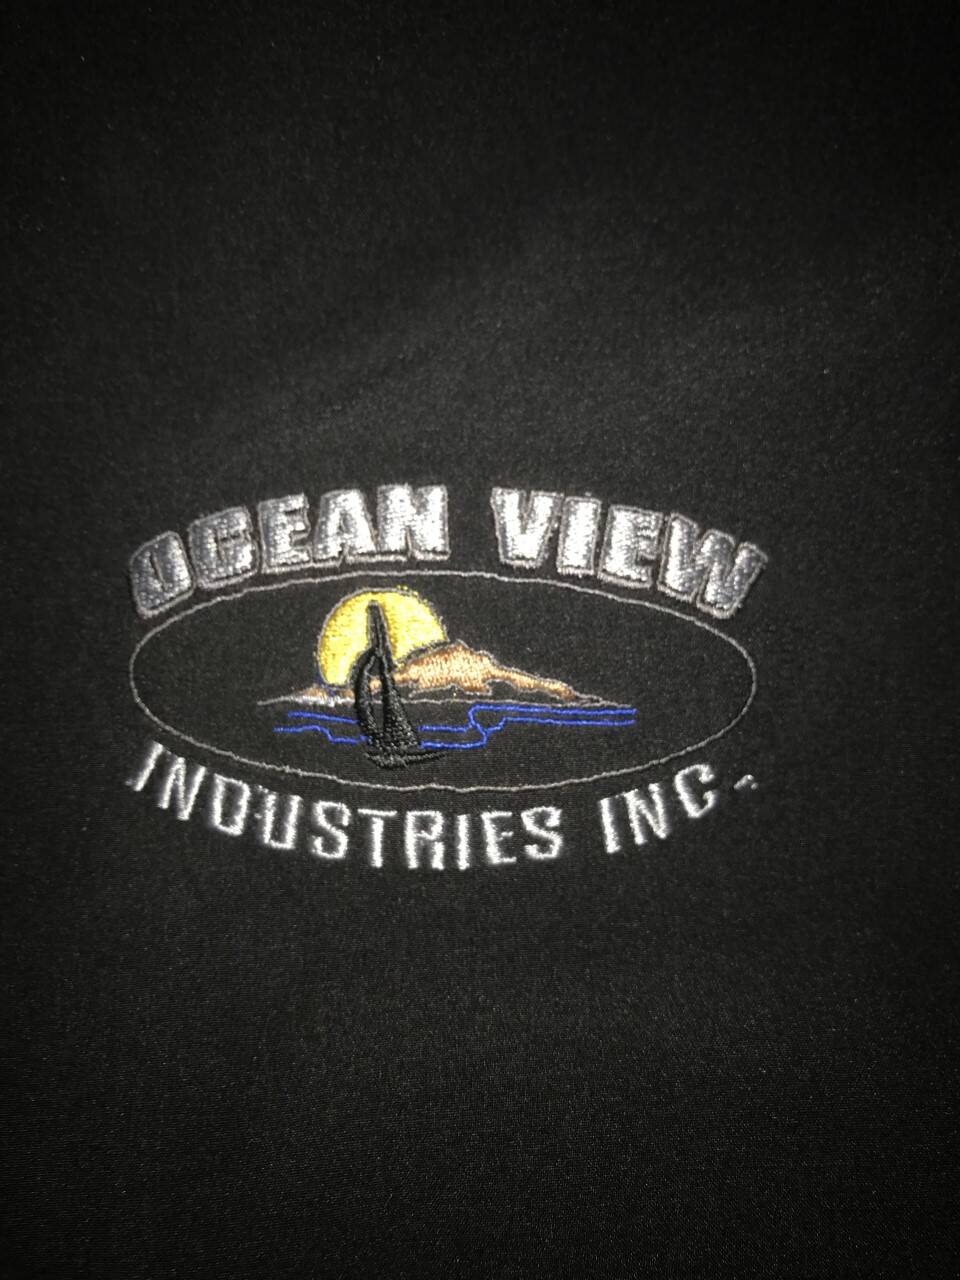 Ocean View industries